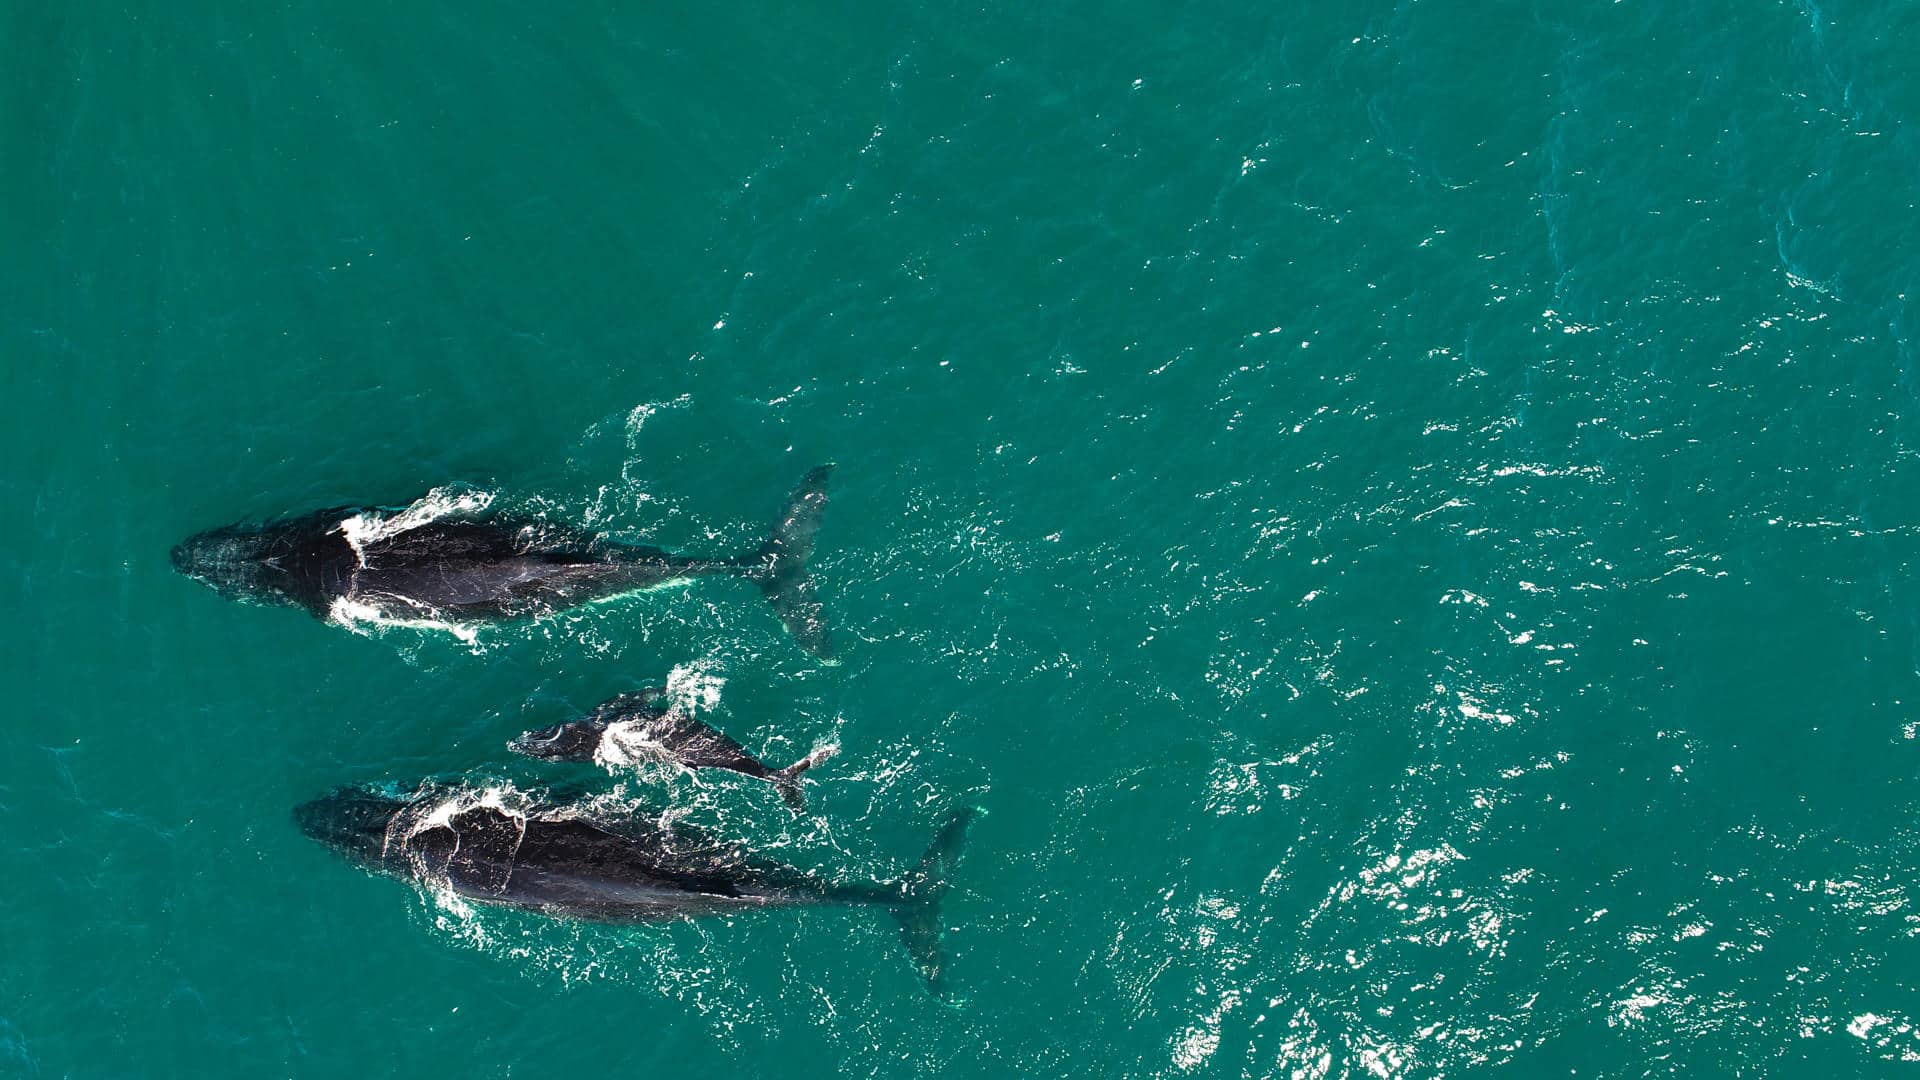 ¿Sabías qué existe el día mundial de las ballenas y delfines? ¿Por qué?